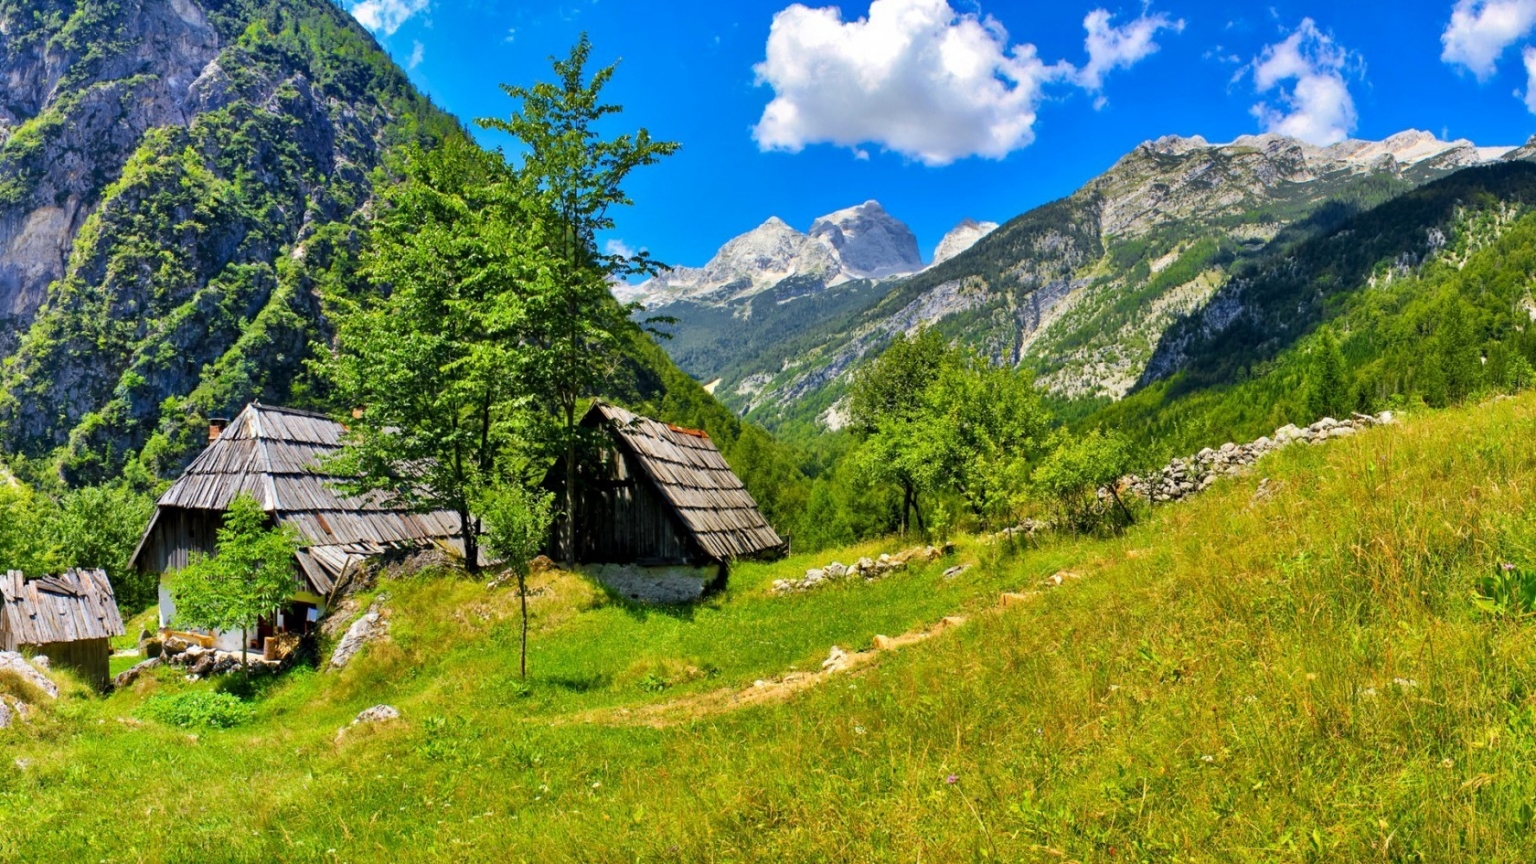 Slovenia Bovec Landscape for 1536 x 864 HDTV resolution